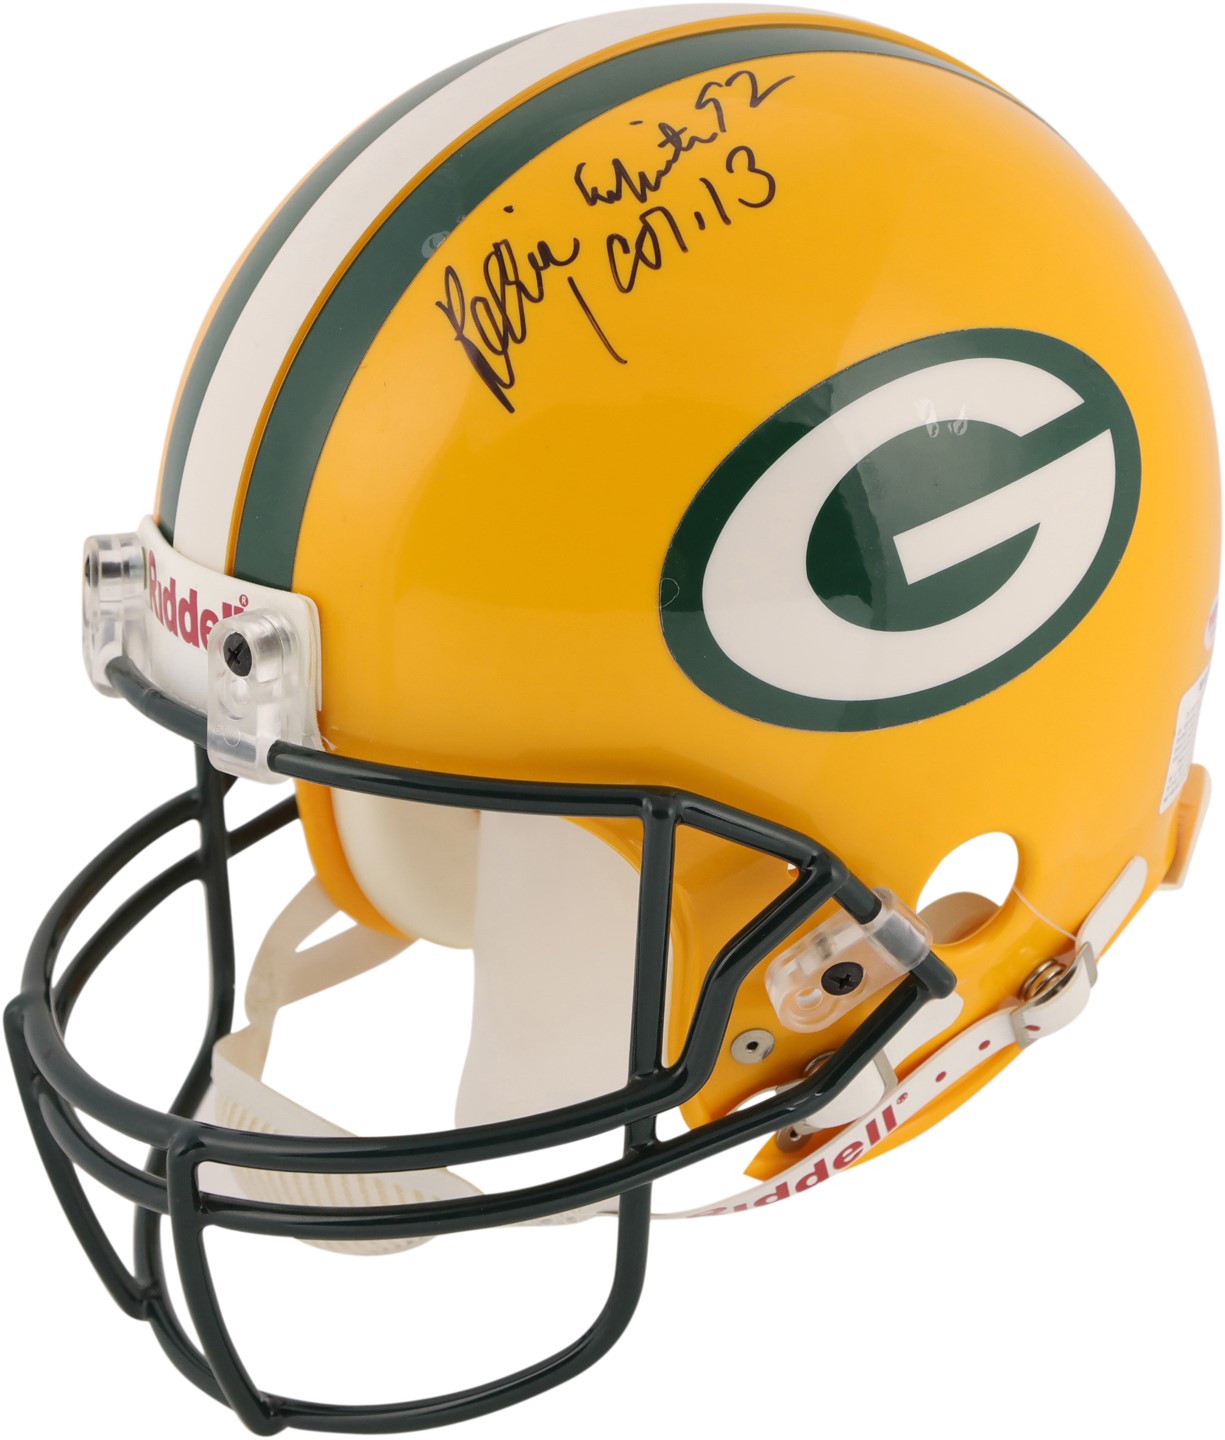 Football - Reggie White Green Bay Packers Signed Full Size Helmet (PSA)